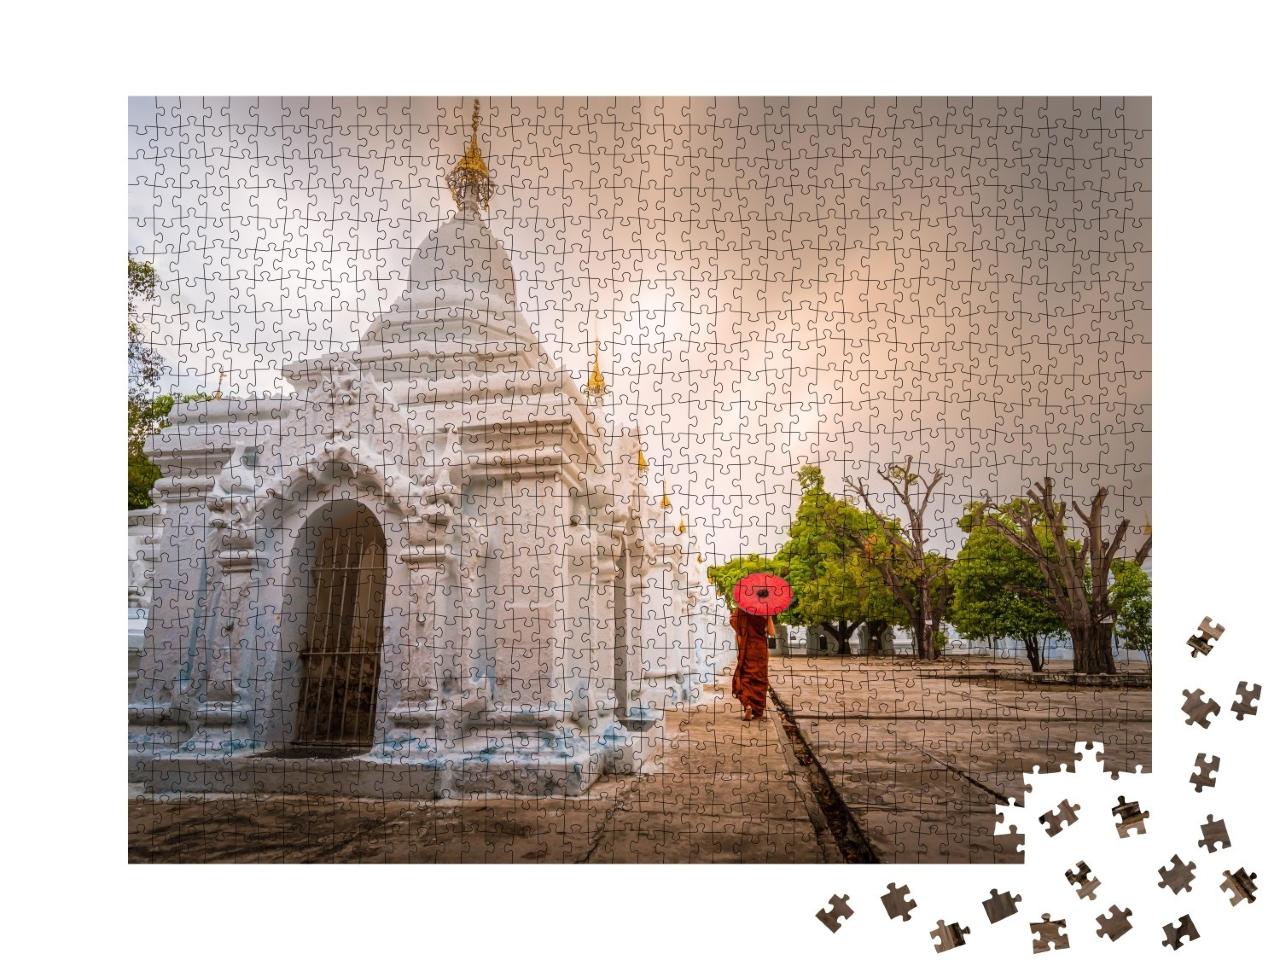 Puzzle de 1000 pièces « Moine au parapluie rouge, Mandalay, Myanmar »